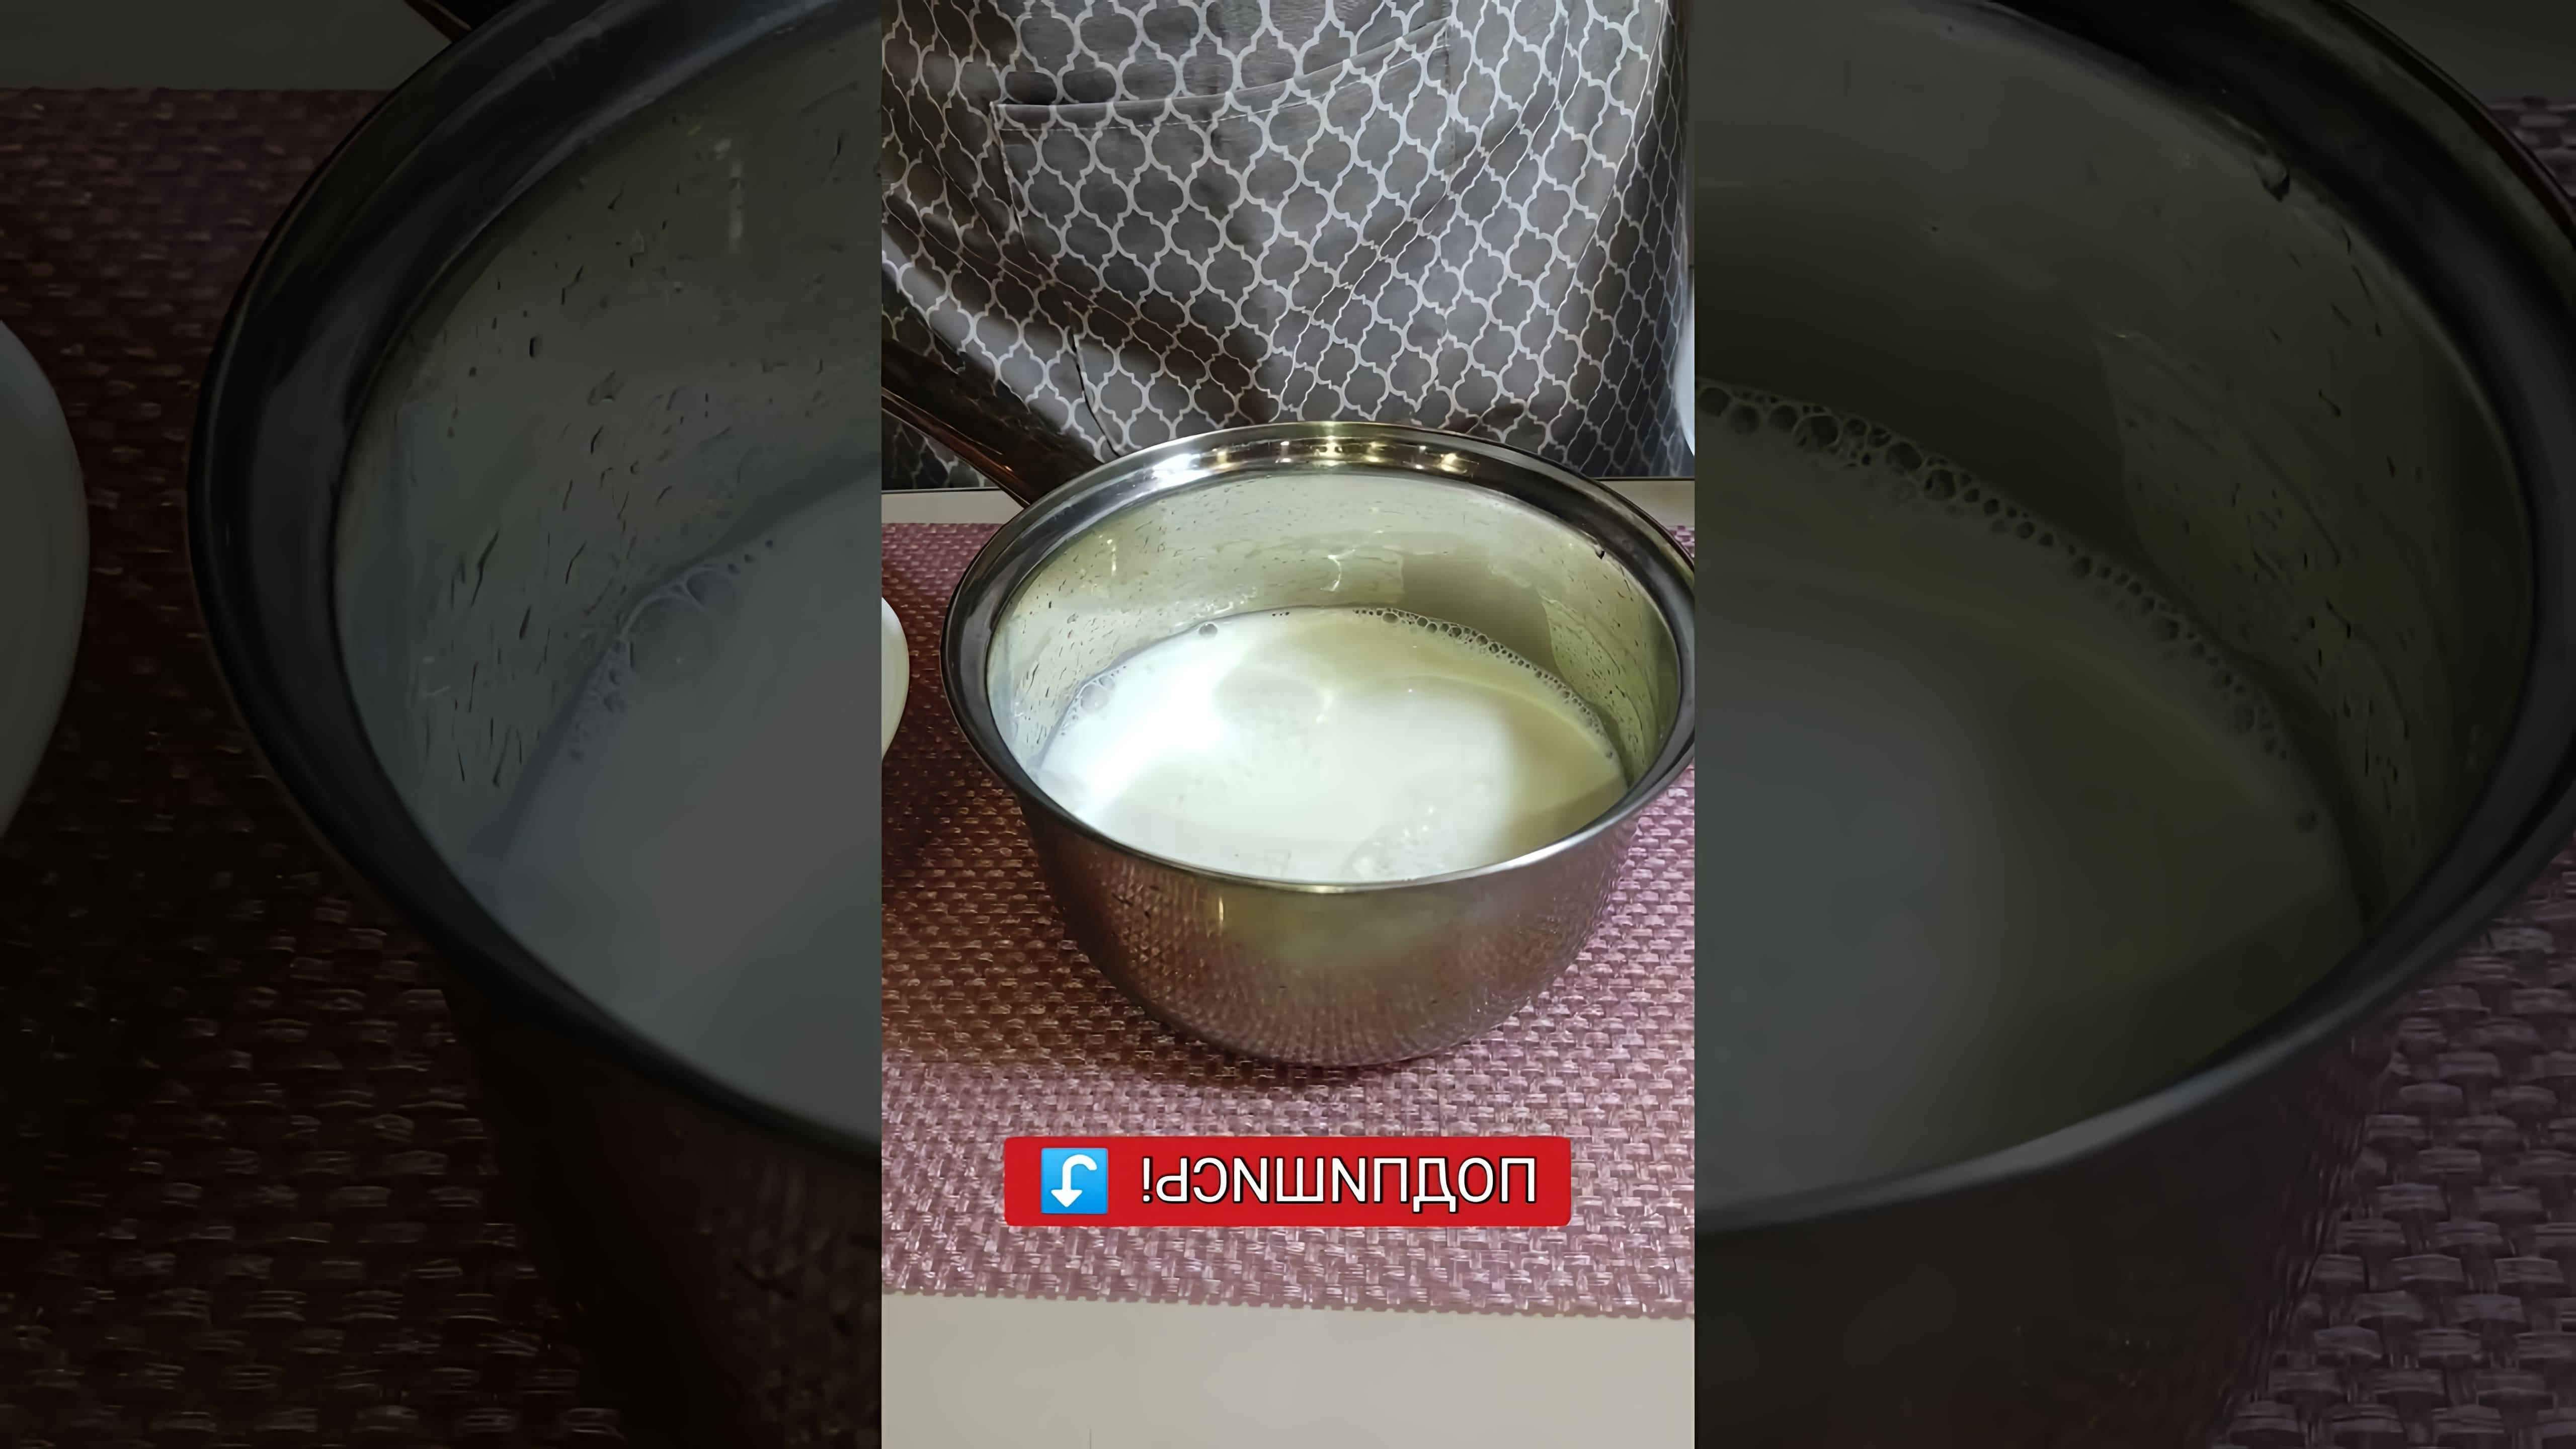 В этом видео демонстрируется процесс приготовления быстрого завтрака - овсянки на молоке